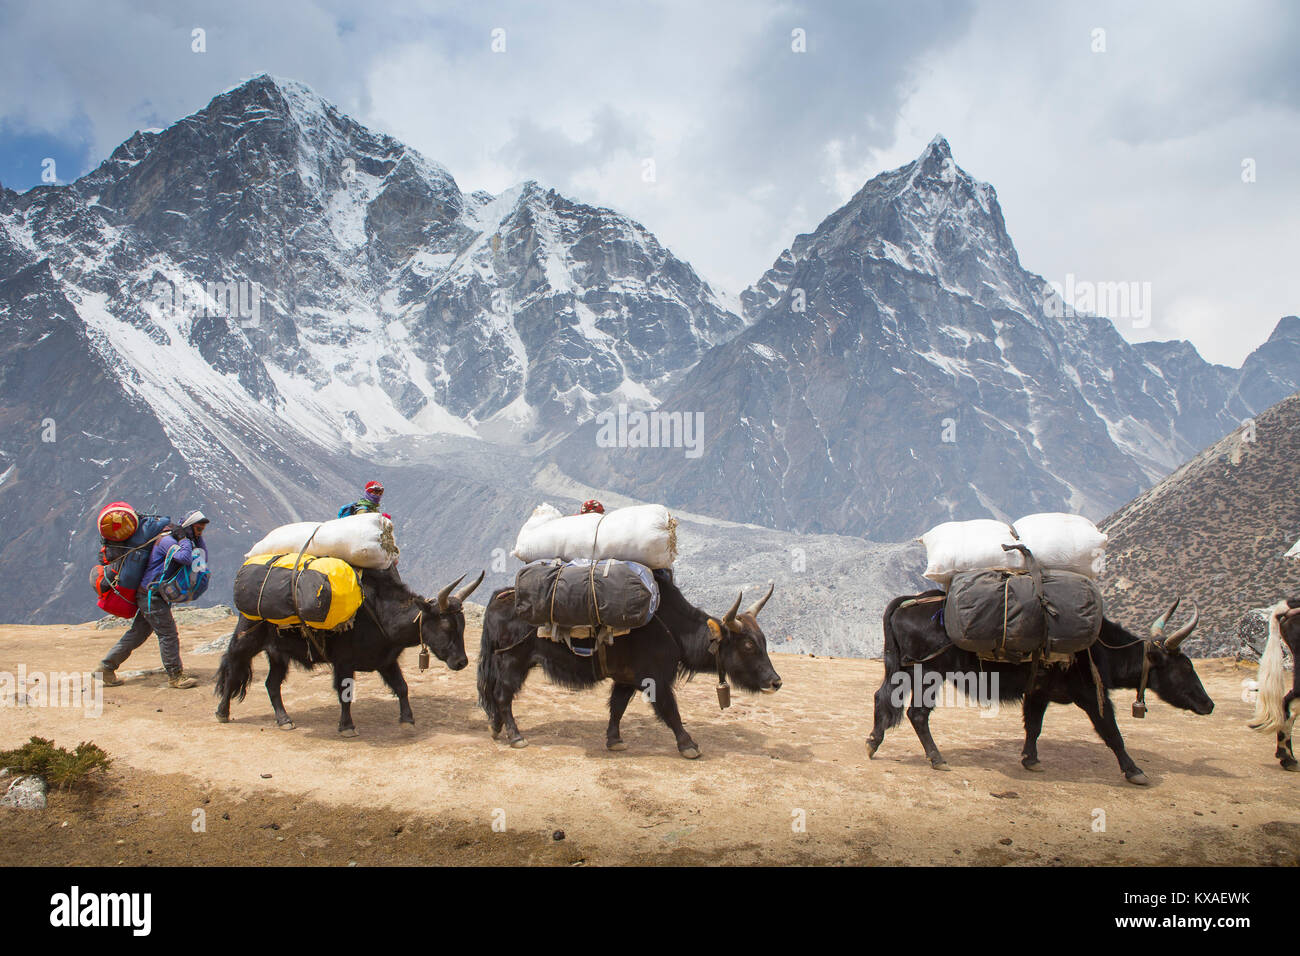 Une caravane de yacks transportant de lourdes charges sur sa façon de Camp de base de l'Everest. En soirée, vous serez récompensé avec de délicieux plats népalais autour de la salle à manger le feu tout en sirotant du thé Sherpa et discuter avec d'autres voyageurs. Banque D'Images